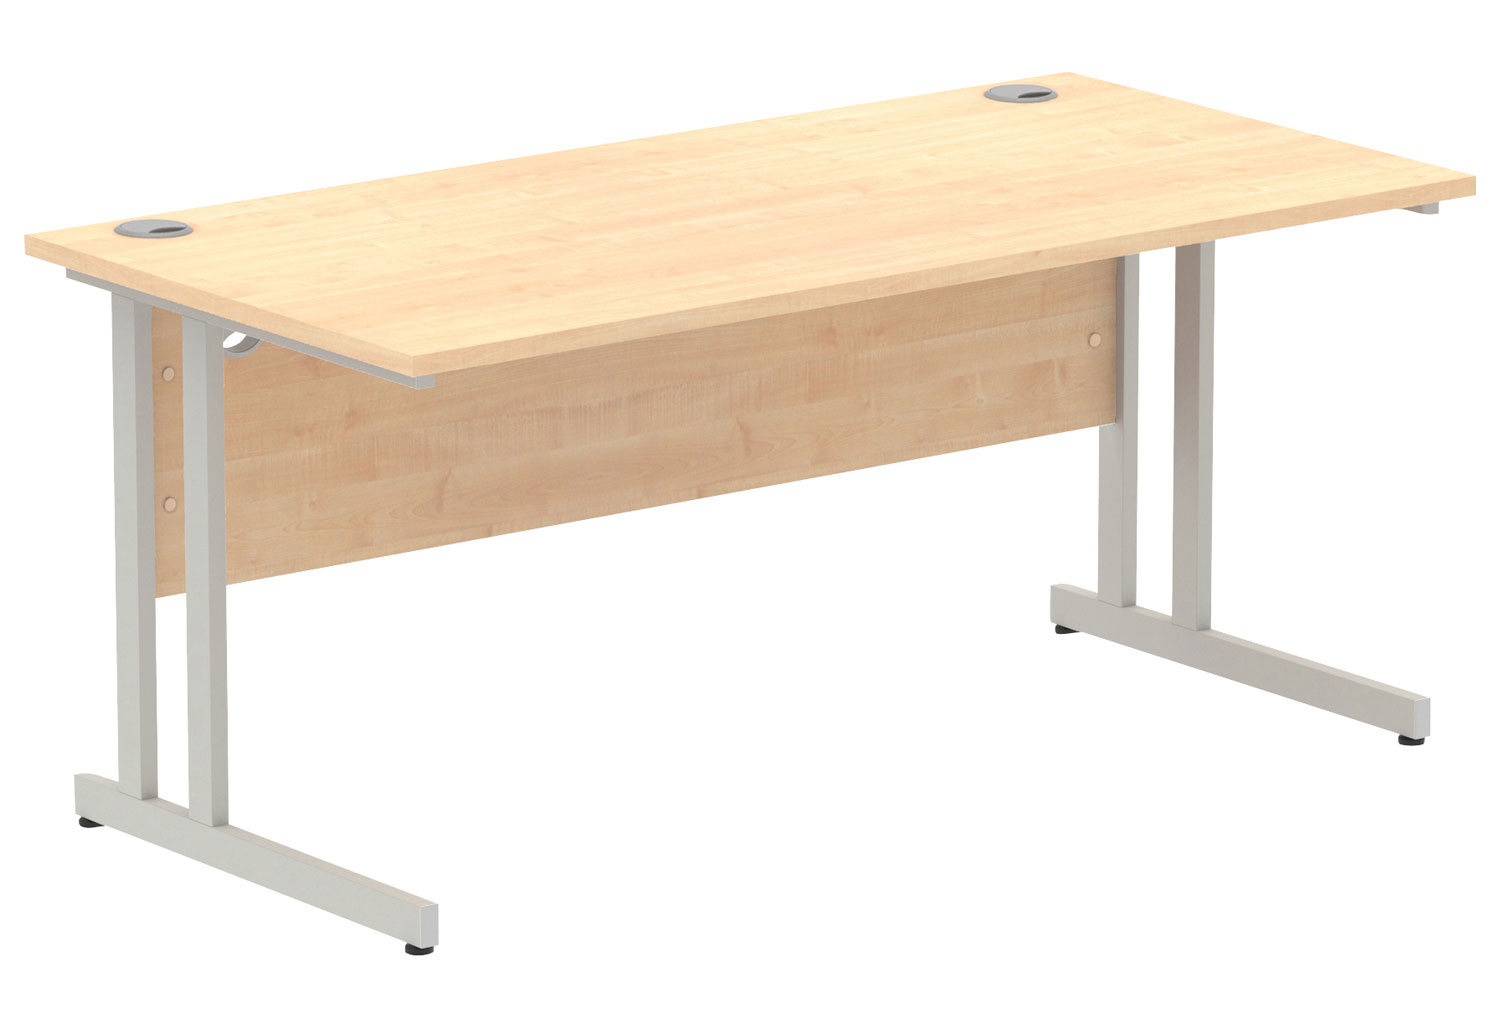 All Maple C-Leg Rectangular Office Desk, 160wx80dx73h (cm), Silver Frame